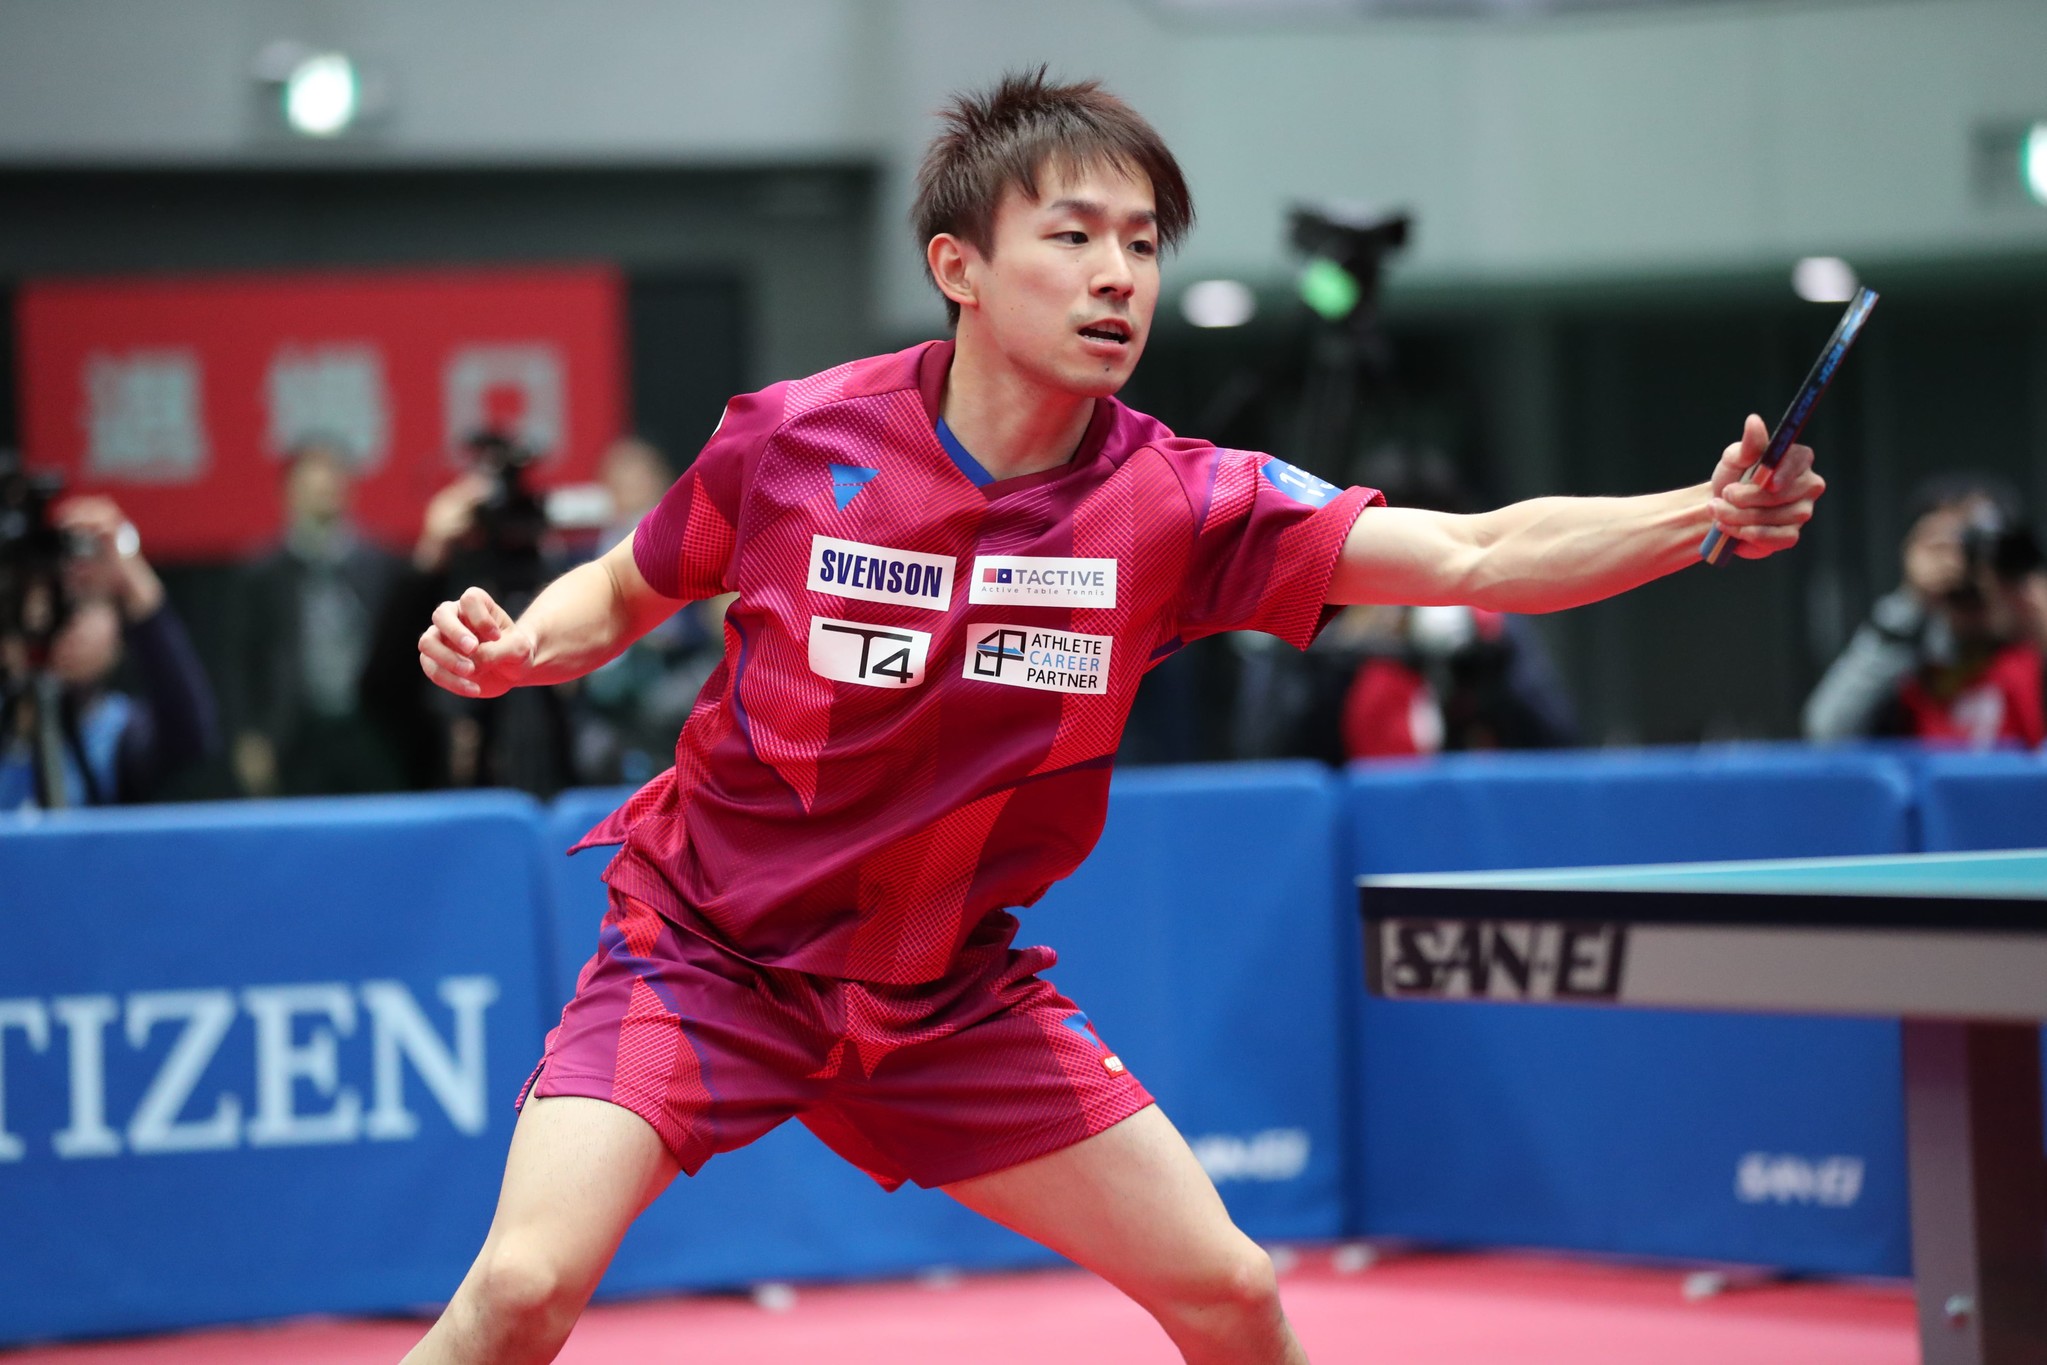 卓球男子日本代表 丹羽孝希選手 入籍のお知らせ 株式会社スヴェンソンホールディングスのプレスリリース